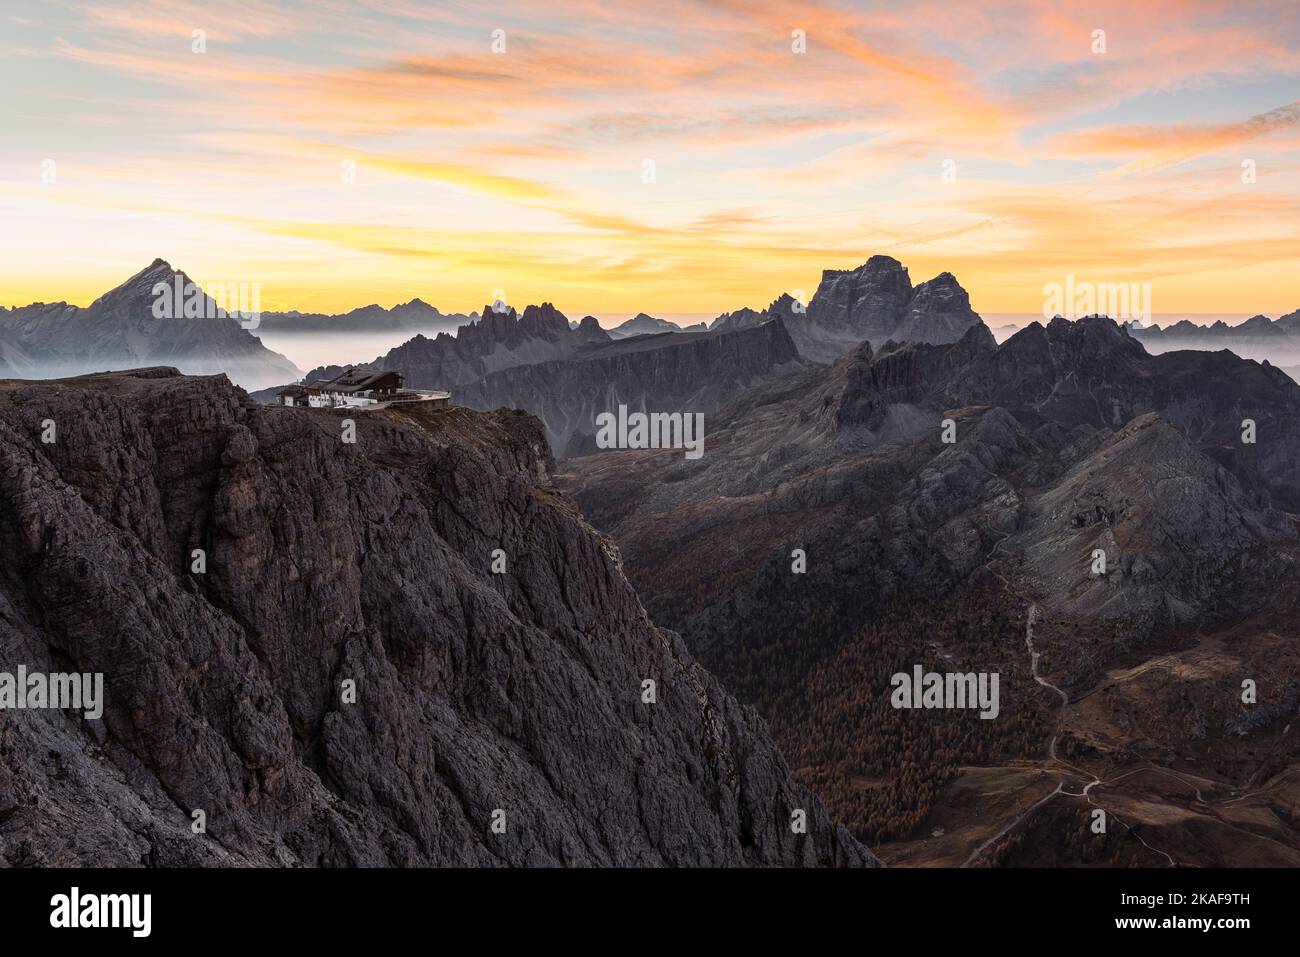 Alba sulla cima del piccolo Lagazuoi con il panorama delle Dolomiti di Ampezzo, Monte Pelmo, Civetta, Antelao nei pressi di Cortina d'Ampezzo Foto Stock